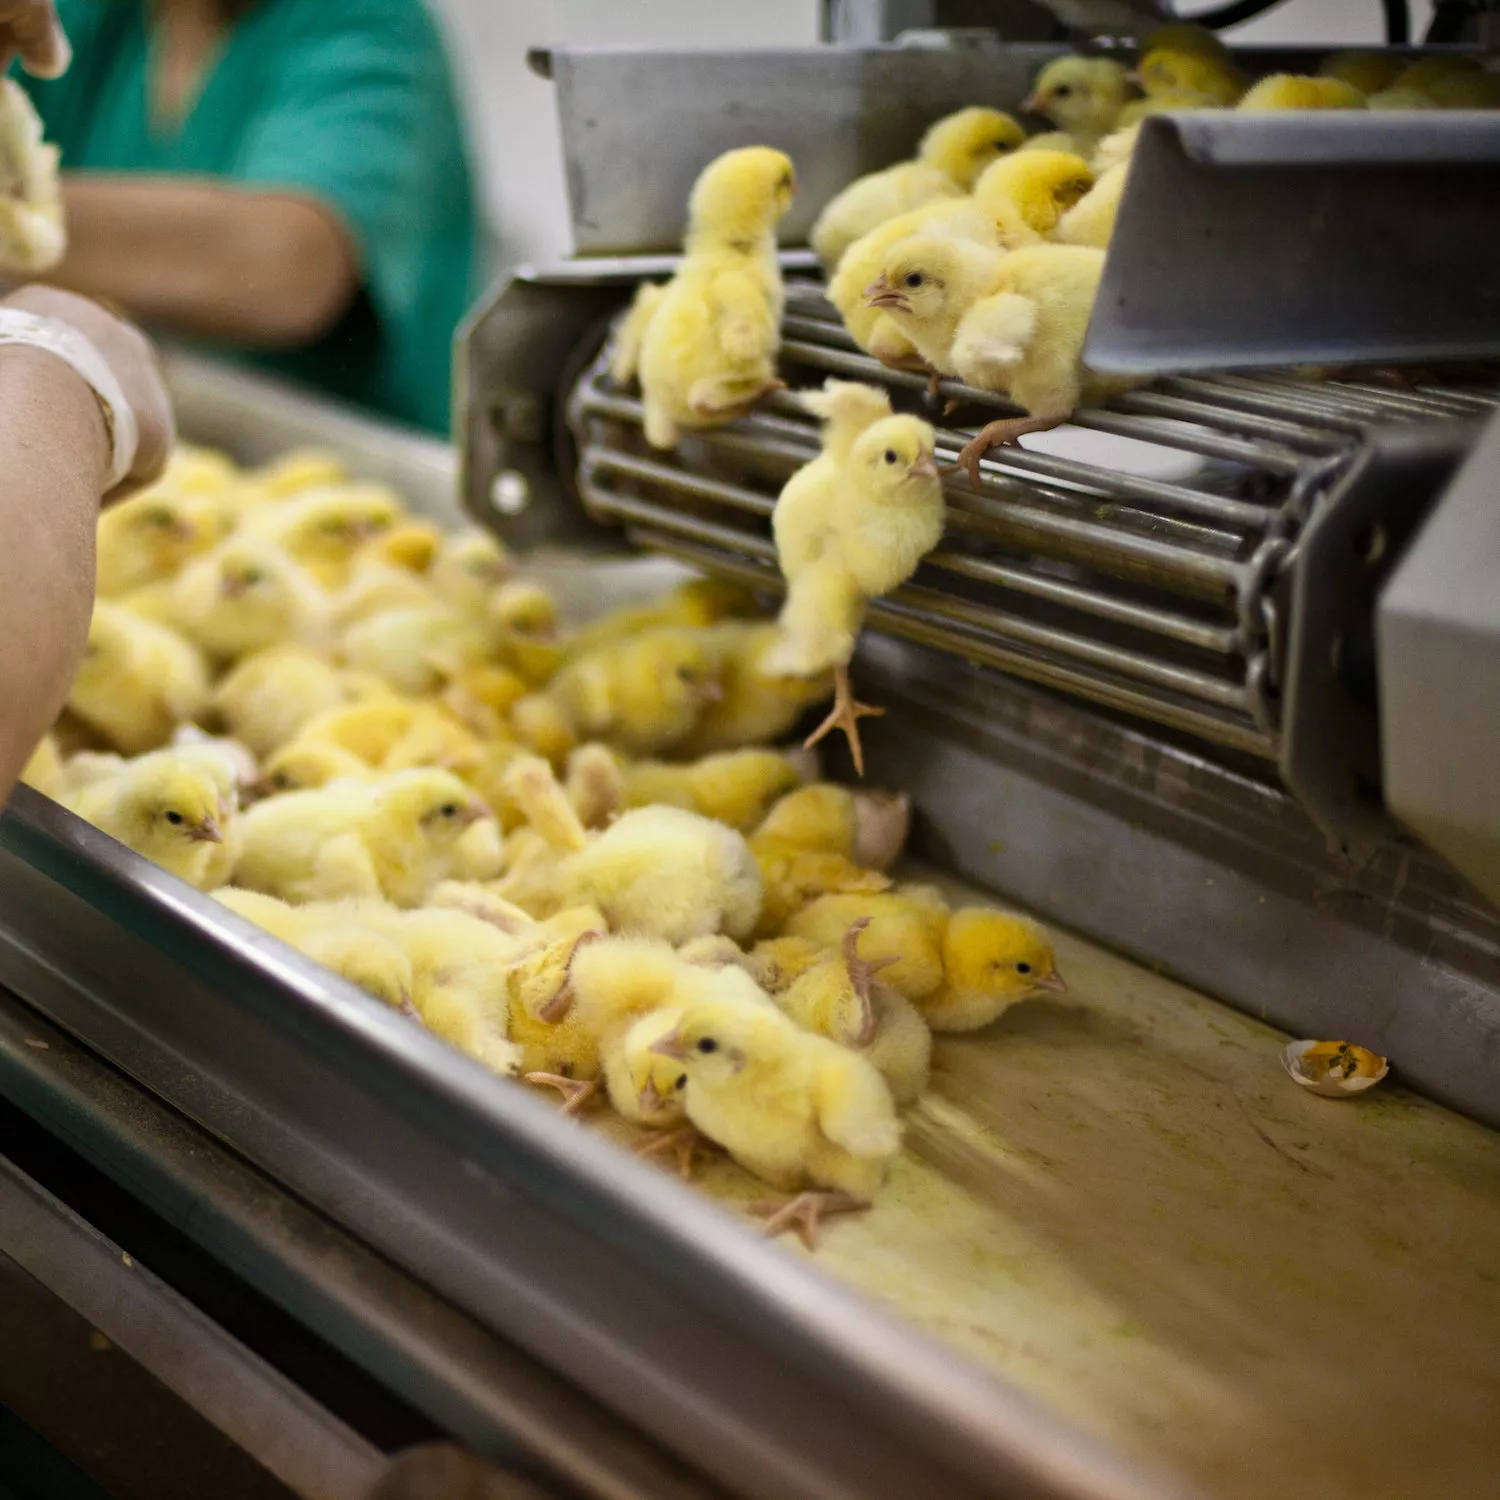 Chicks on conveyer belt slaughter